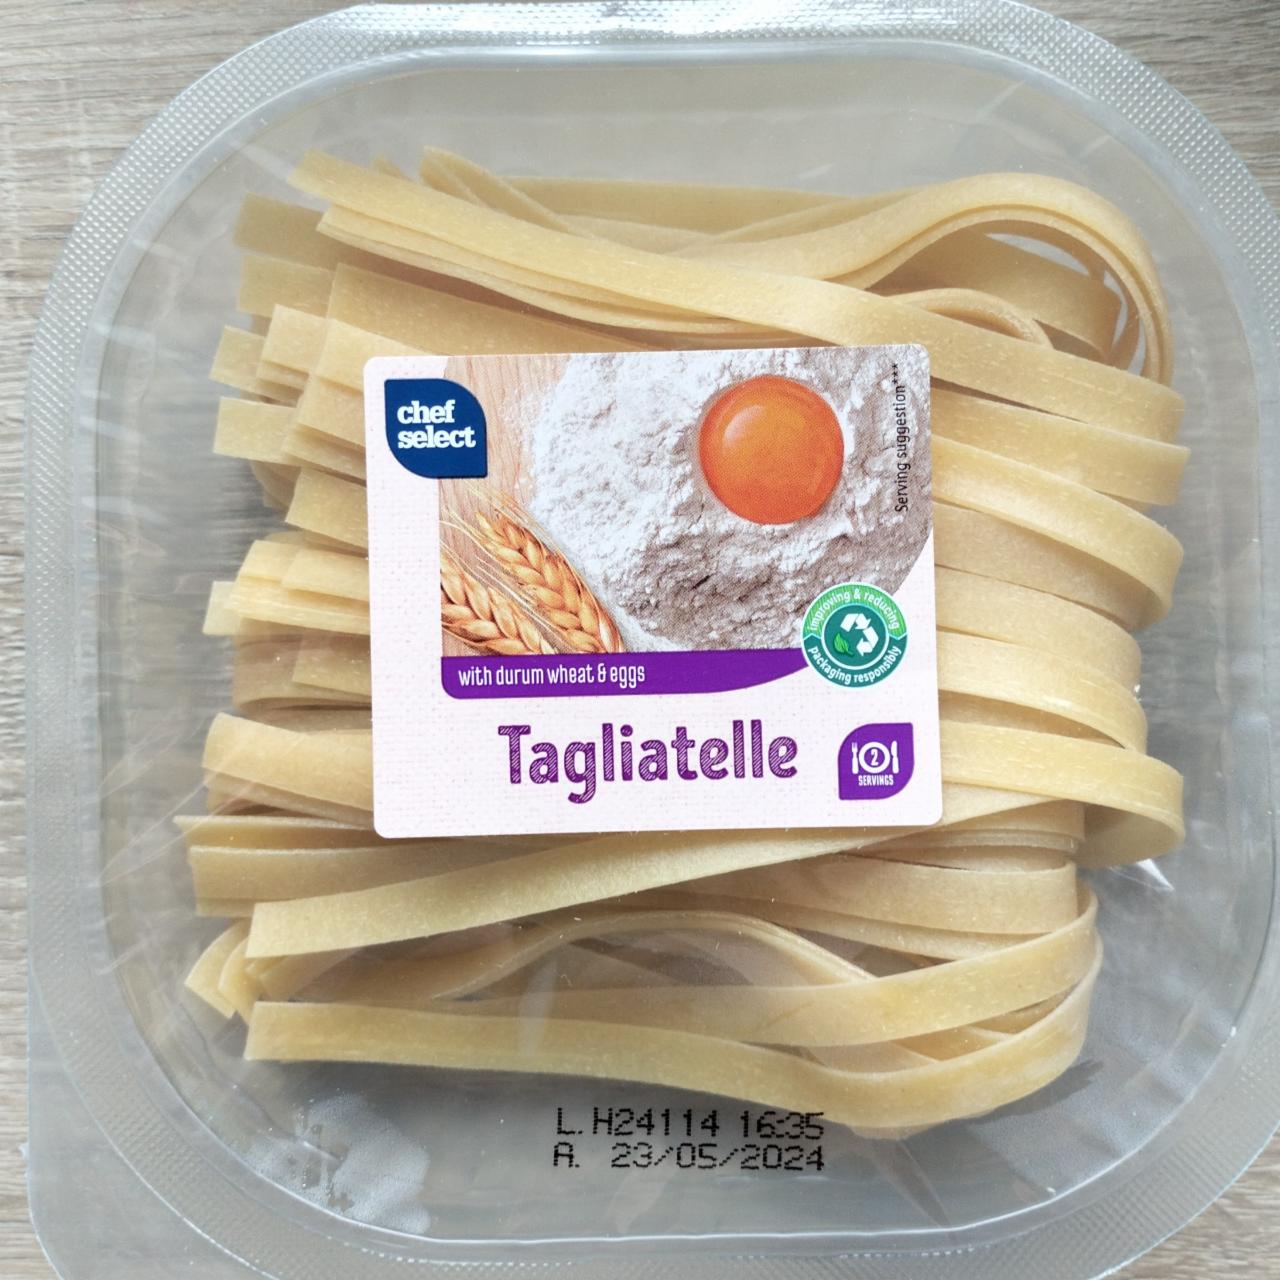 Zdjęcia - Tagliatelle Chef select